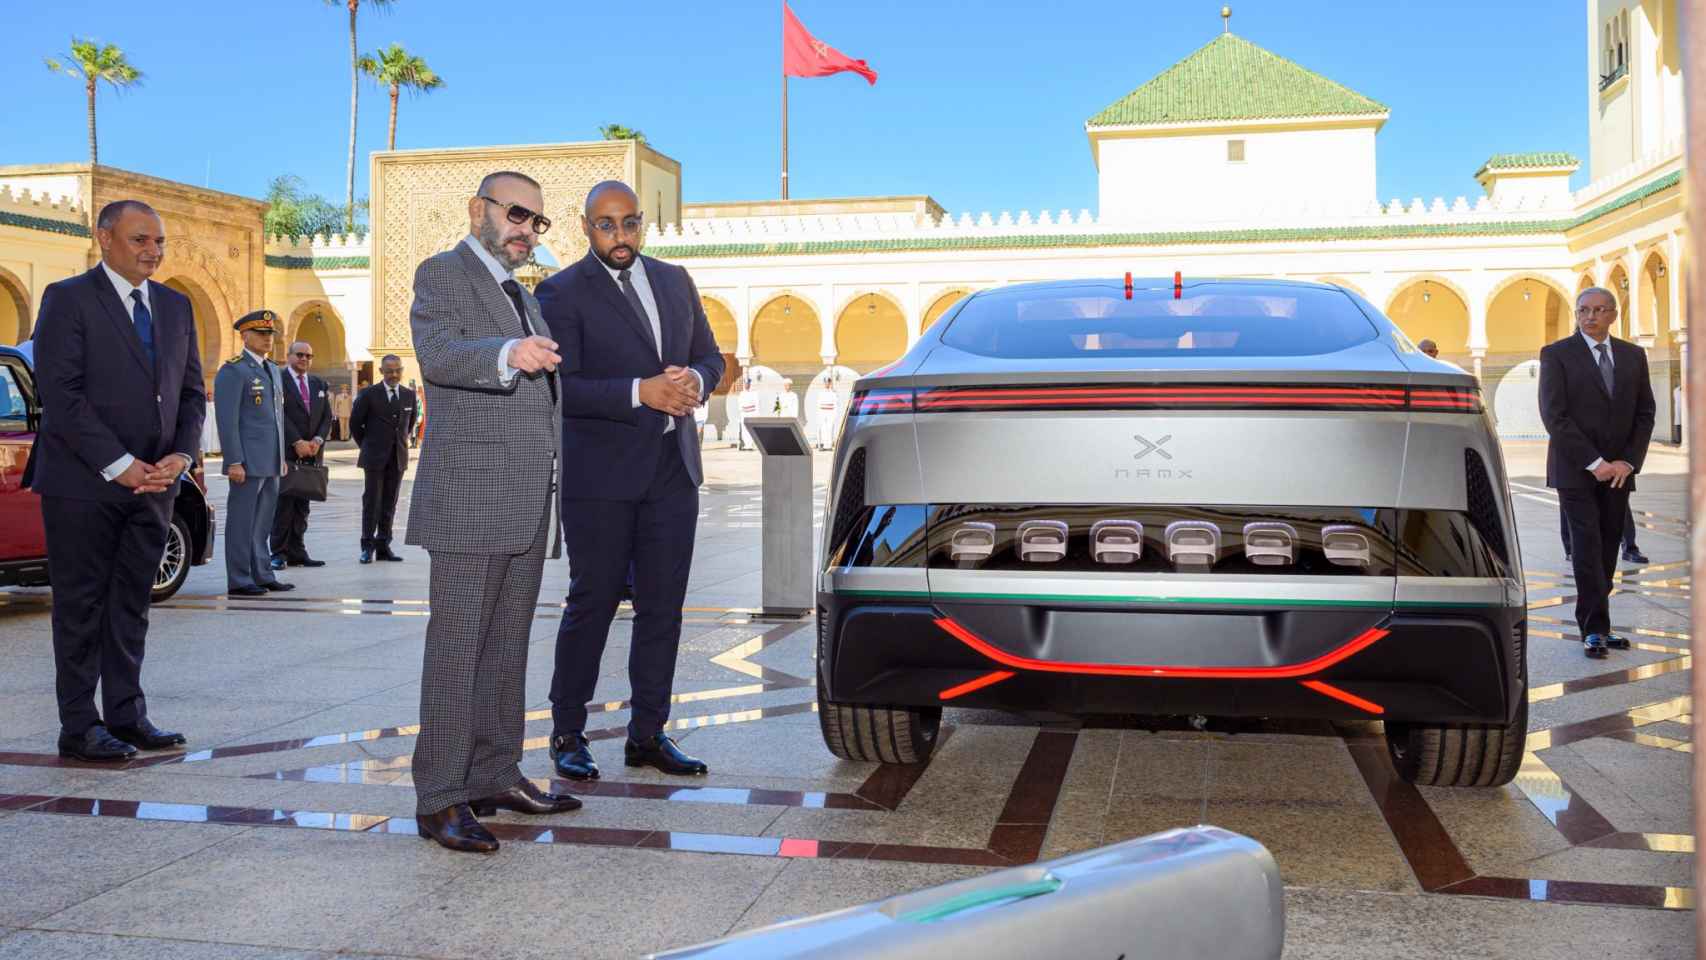 Imagen de Mohamed VI con uno de los vehículos apoyados por su Gobierno, el NAMX.